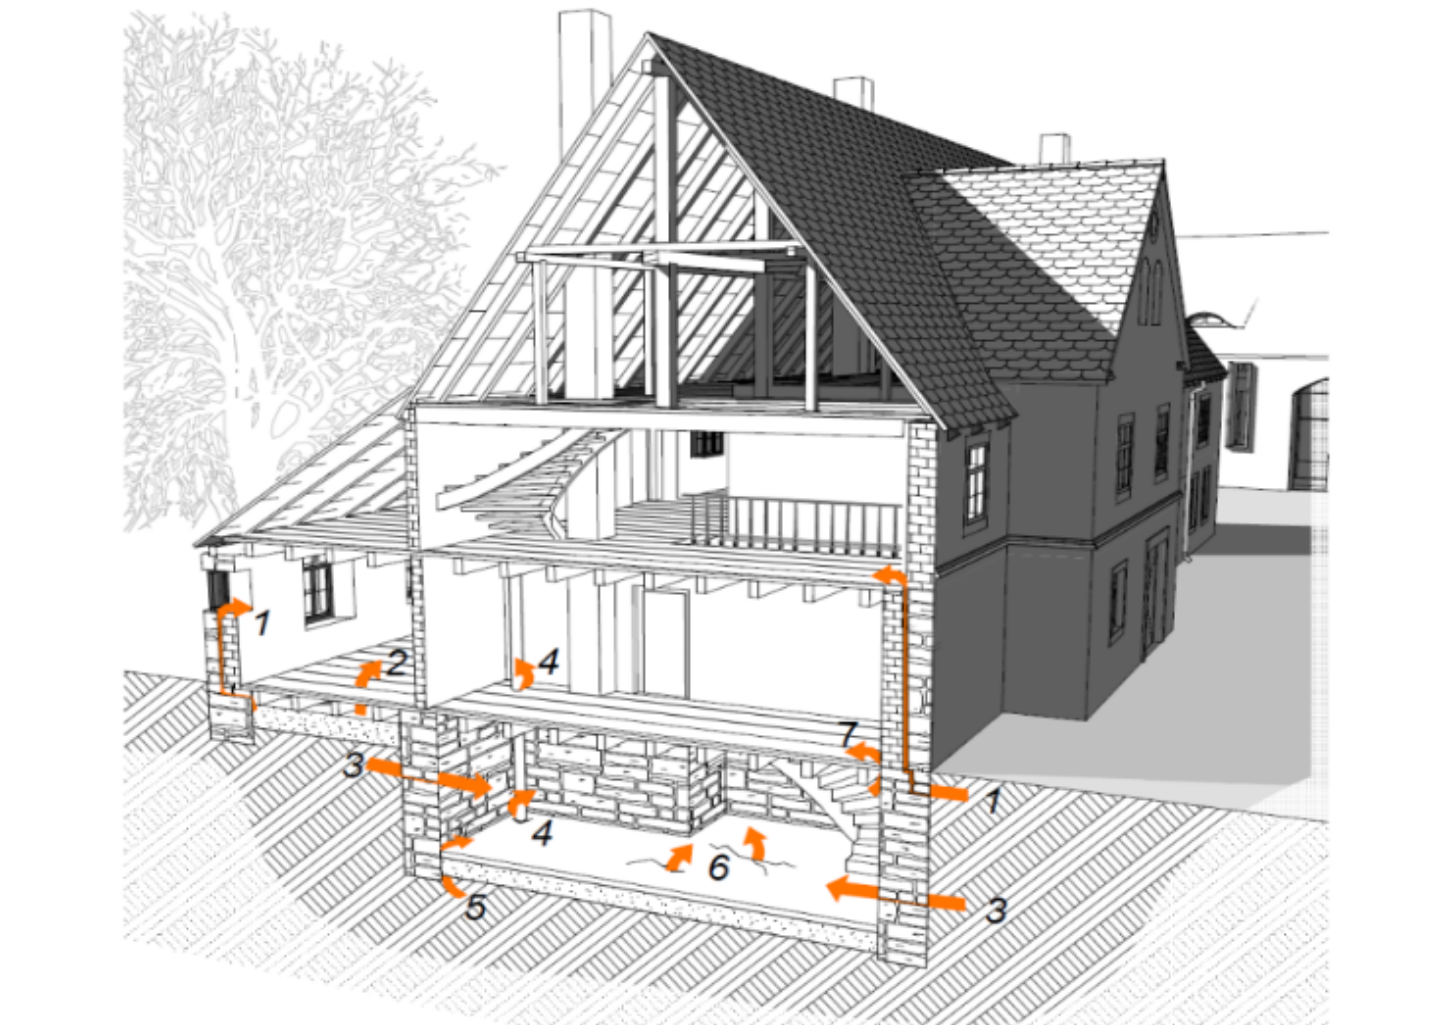 grafischer Scnitt durch ein Haus mit Darstellung der Eintrittspfade für Radon (durch erdberührte Teile, Klüfte und Mediendurchführungen)